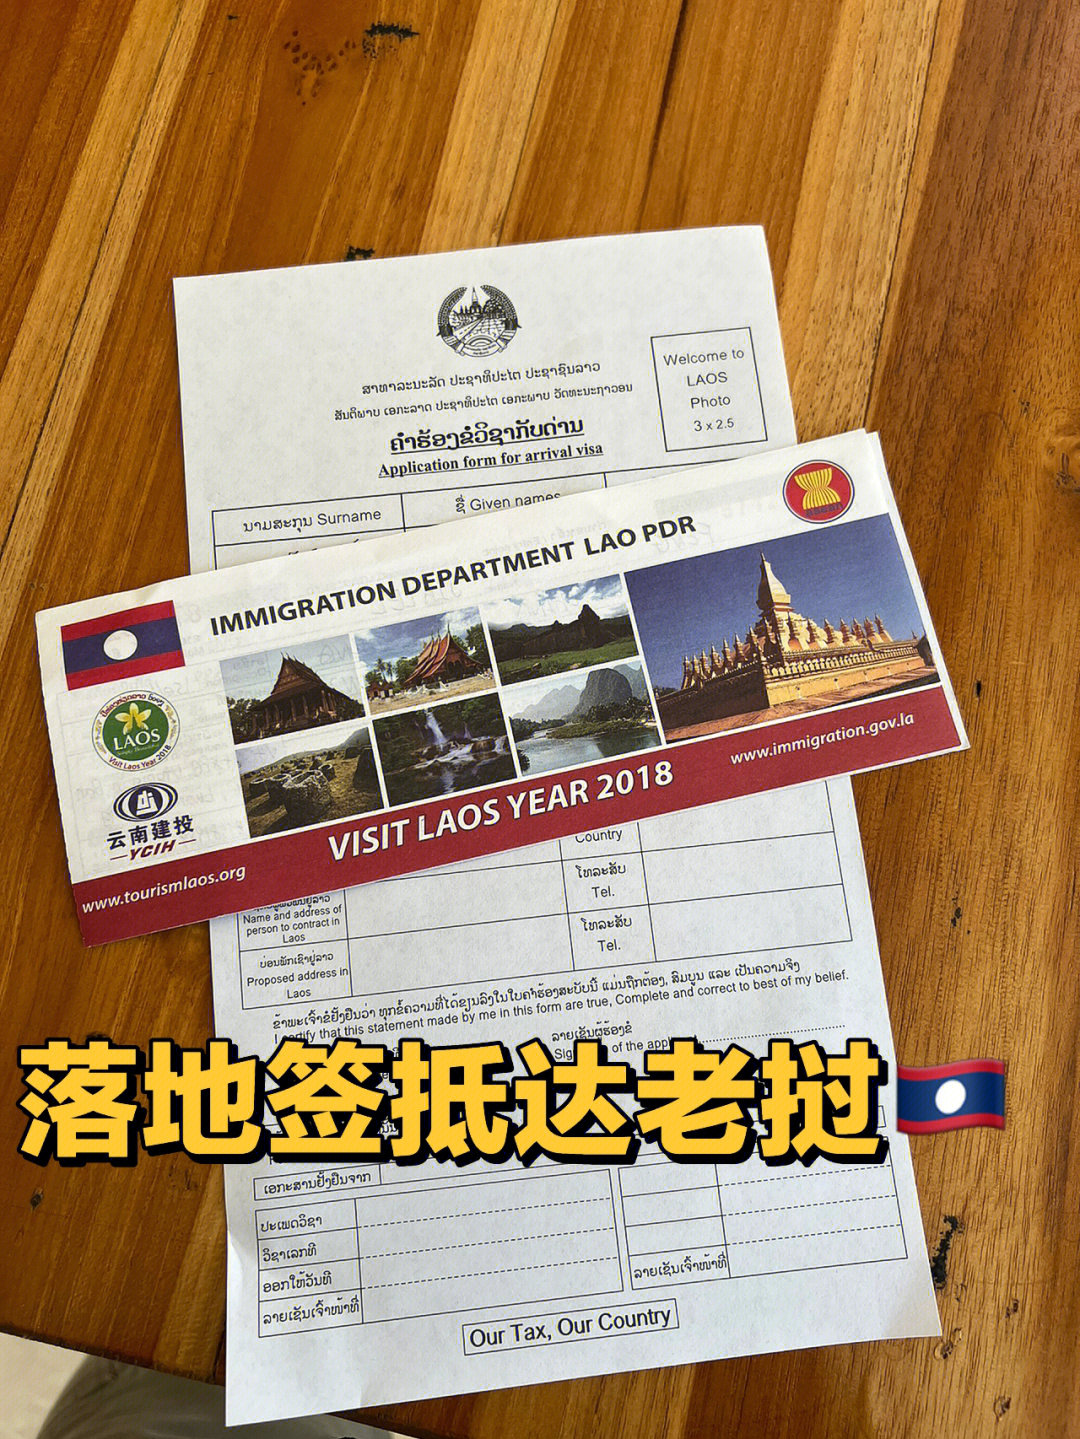 老挝出入境单填写图片